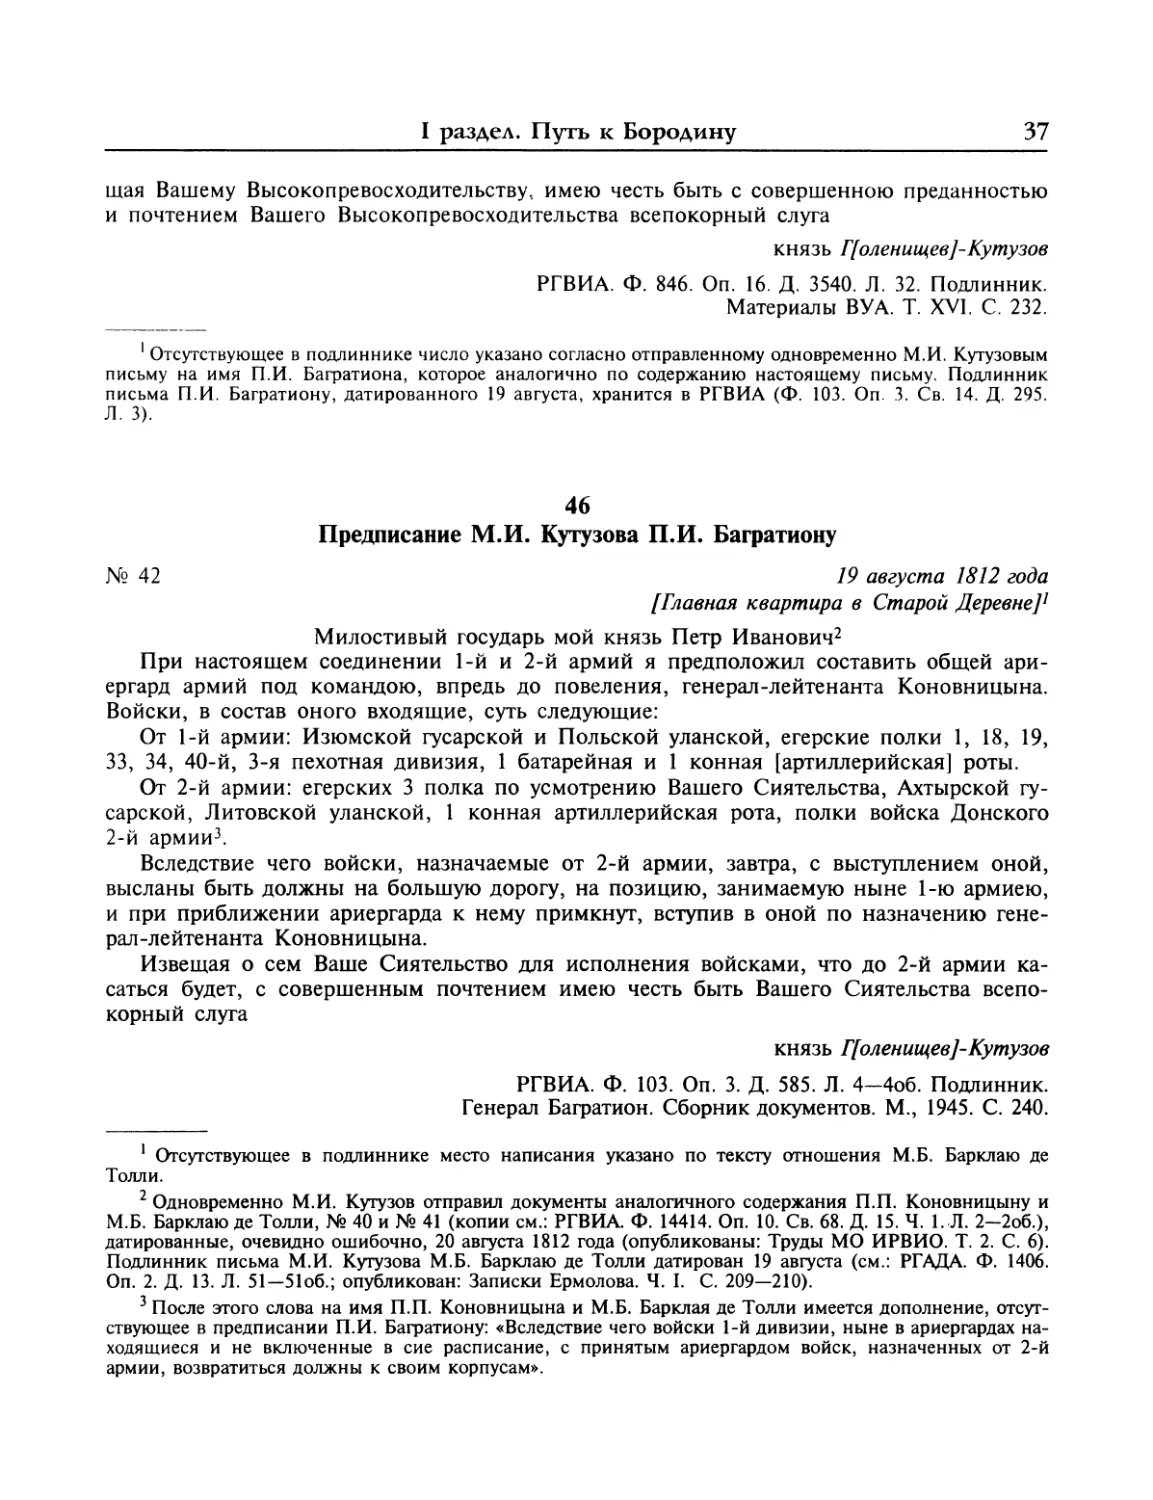 Предписание М.И.Кутузова П.И.Багратиону